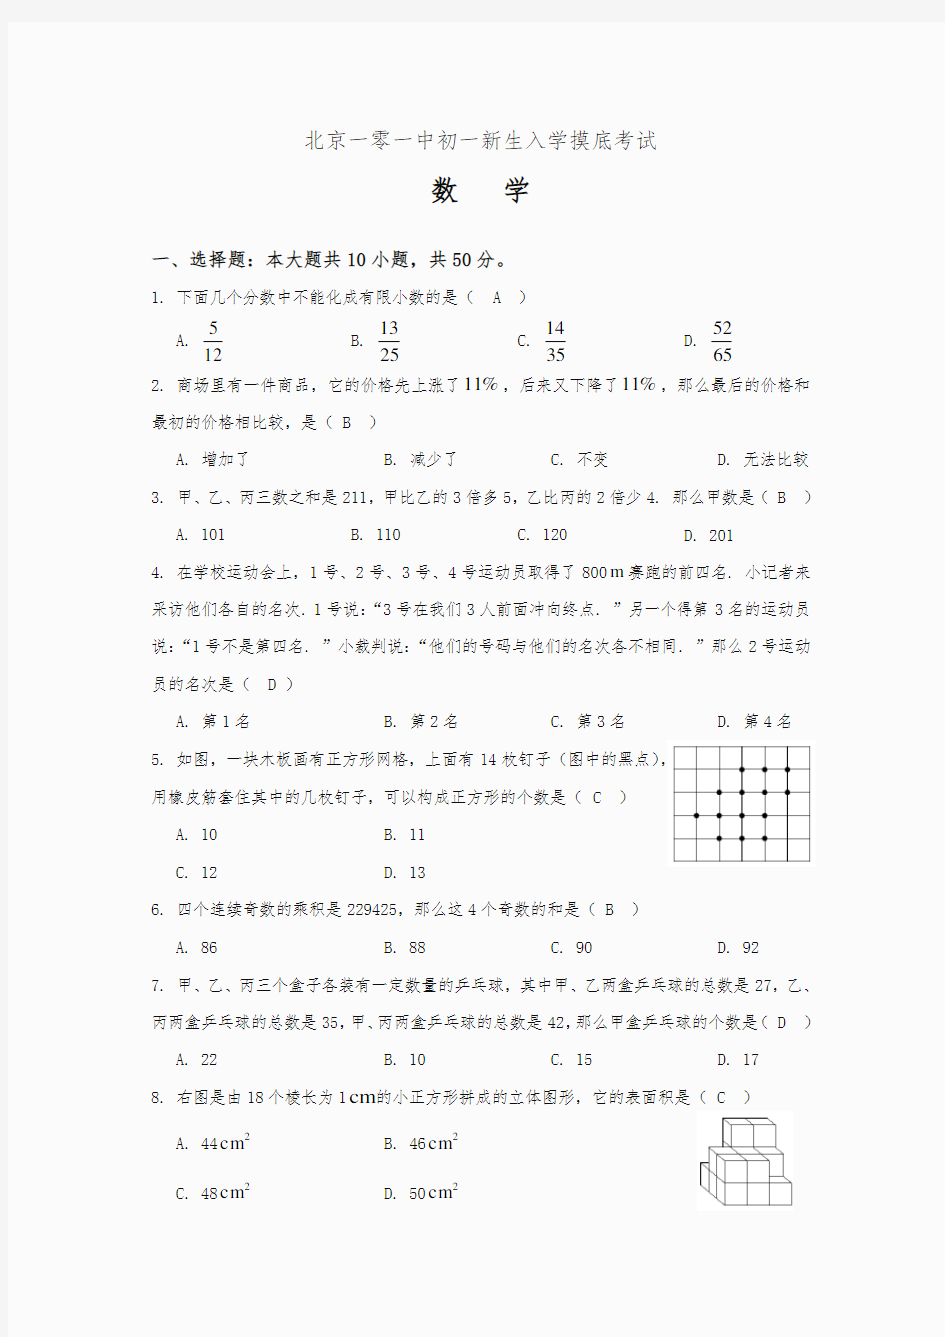 【最新】北京101中学初一新生分班测试试卷